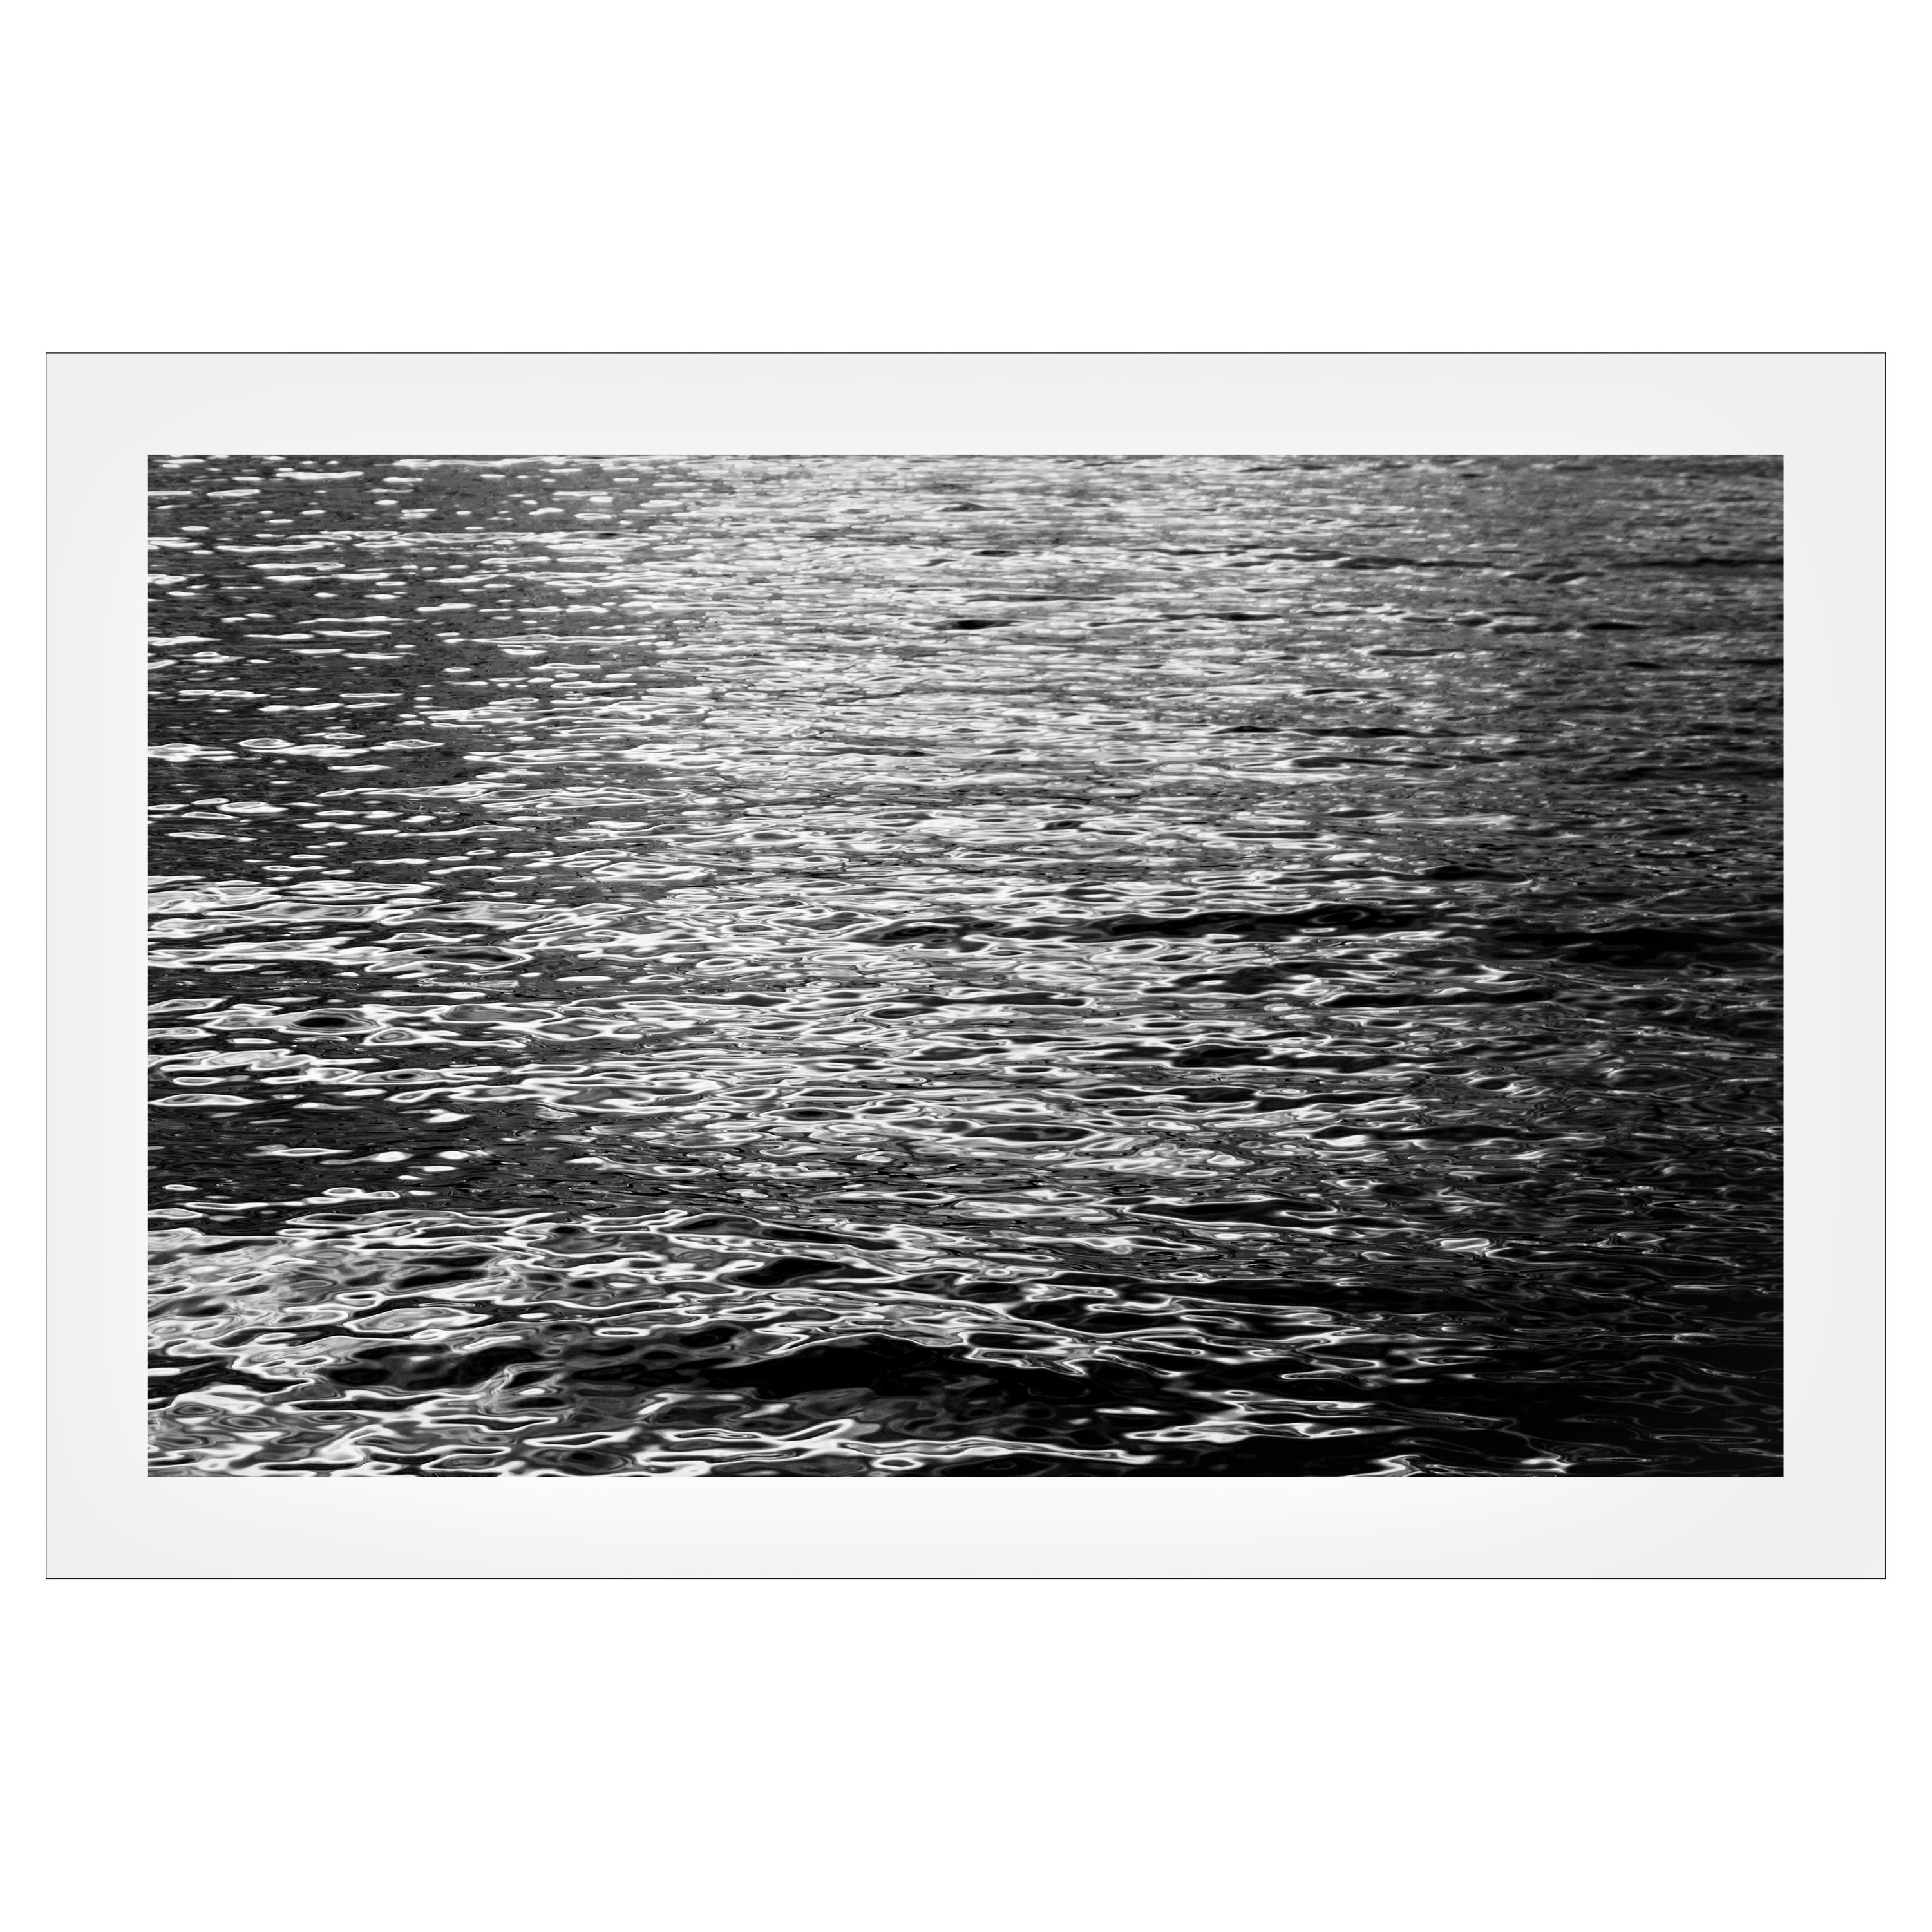 Black and White Photograph Kind of Cyan - Ondulations abstraites en noir et blanc au clair de lune, Giclée nautique nocturne